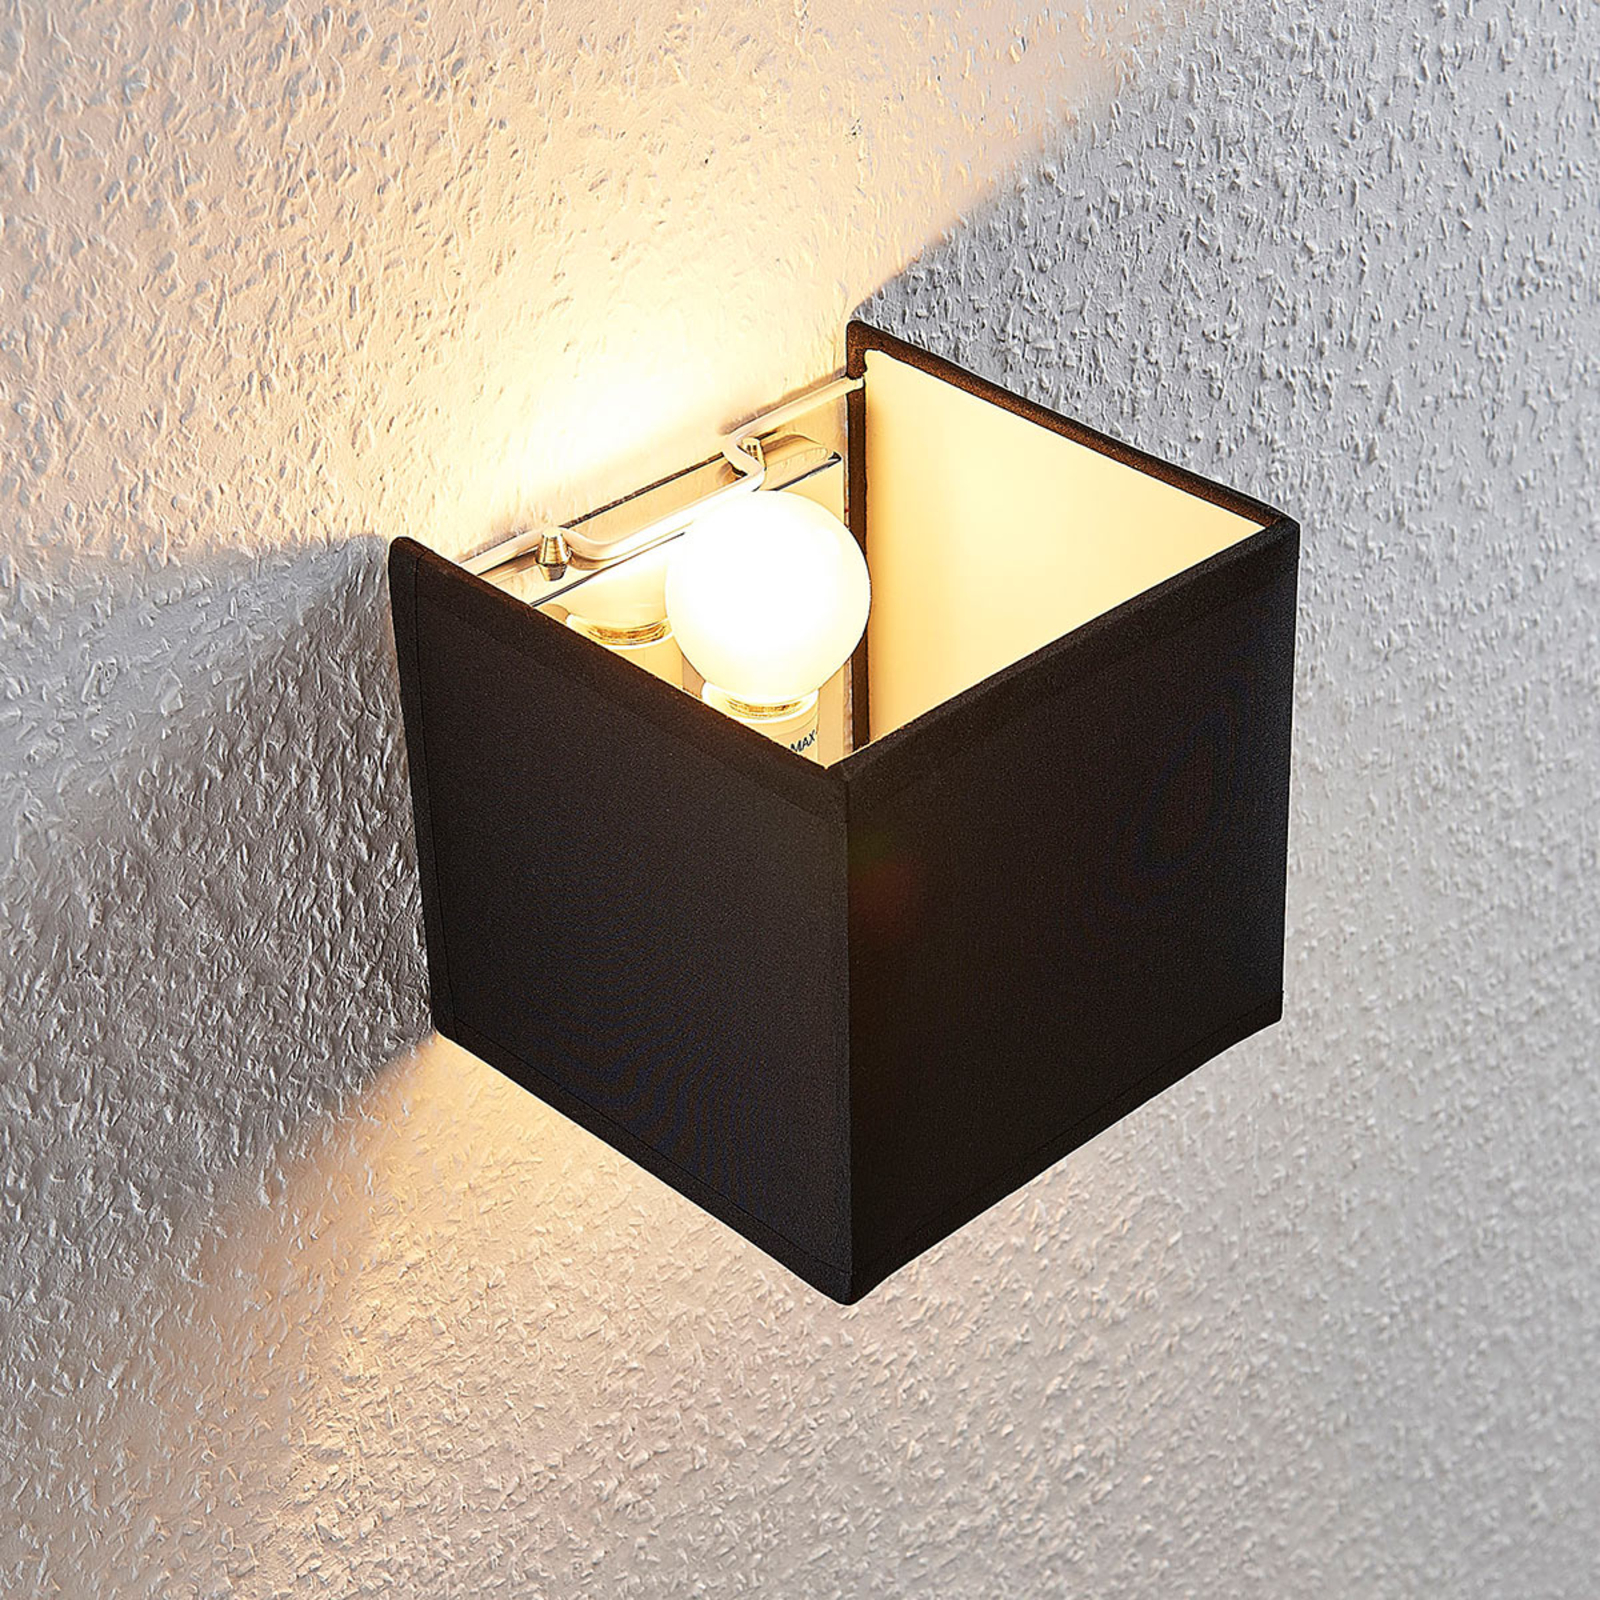 Lampa ścienna Adea, przełącznik, 13 cm, czarna